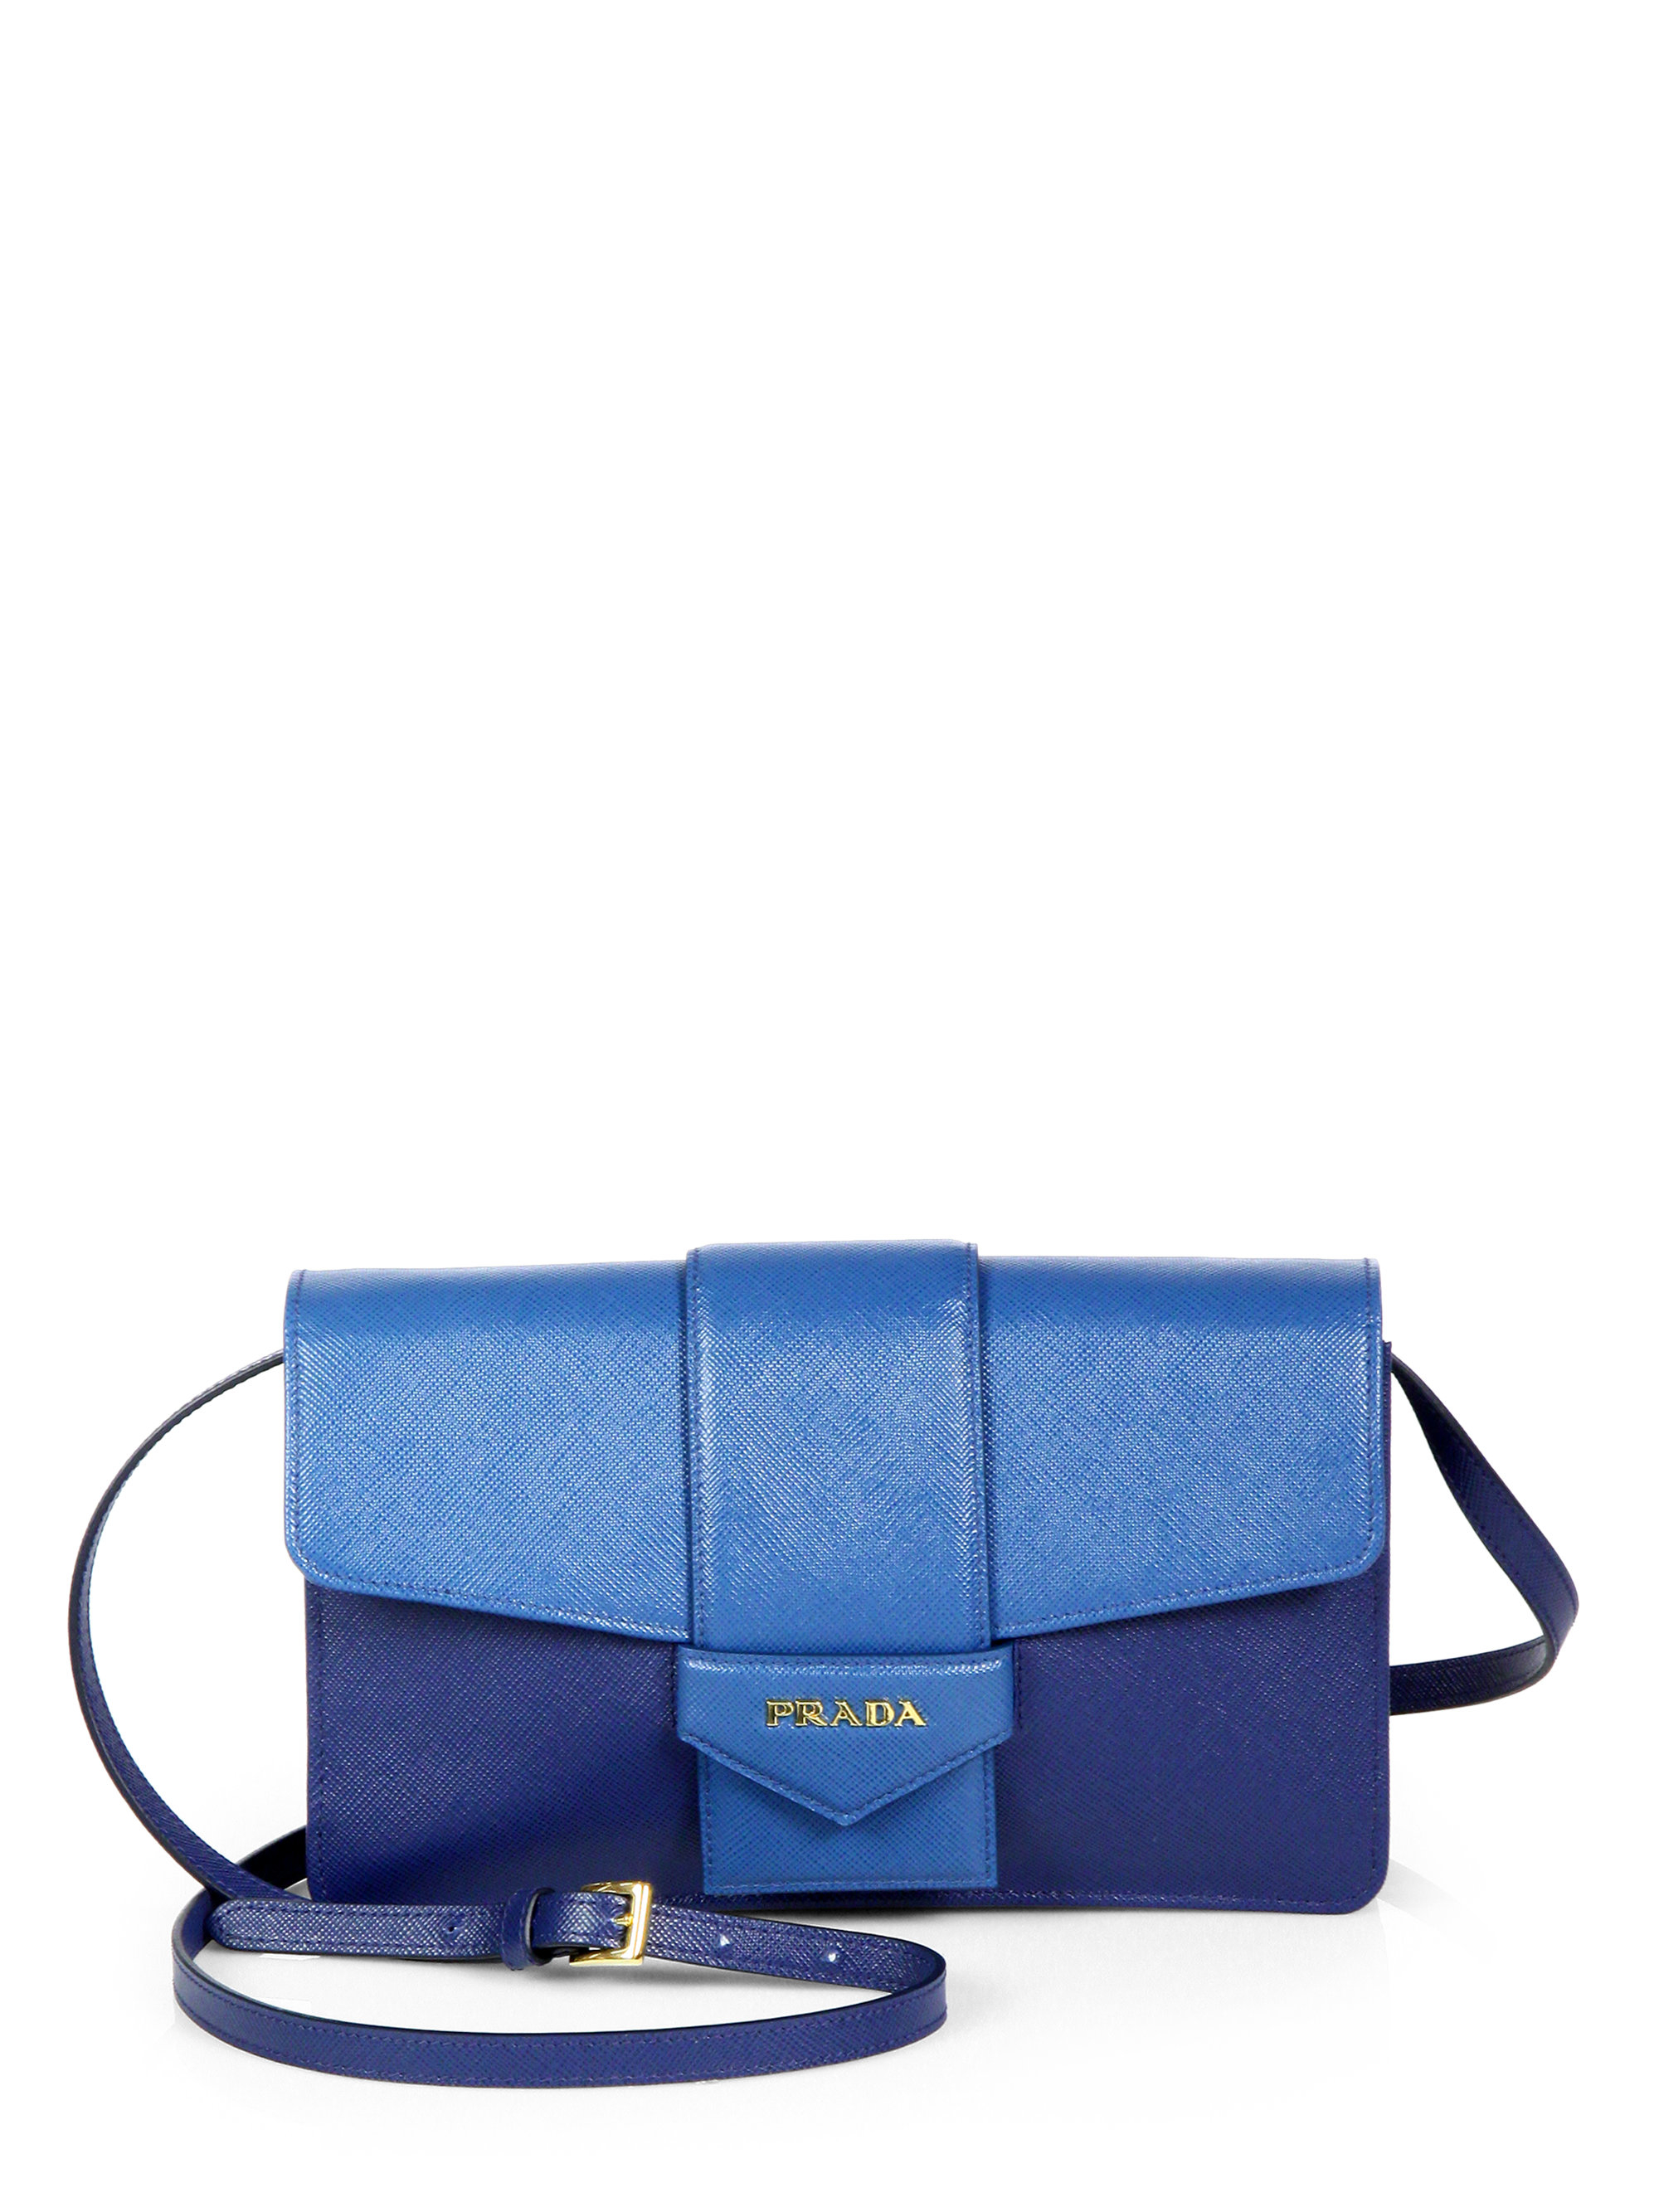 prada men handbags - Prada Saffiano Bicolor Crossbody Wallet in Blue | Lyst